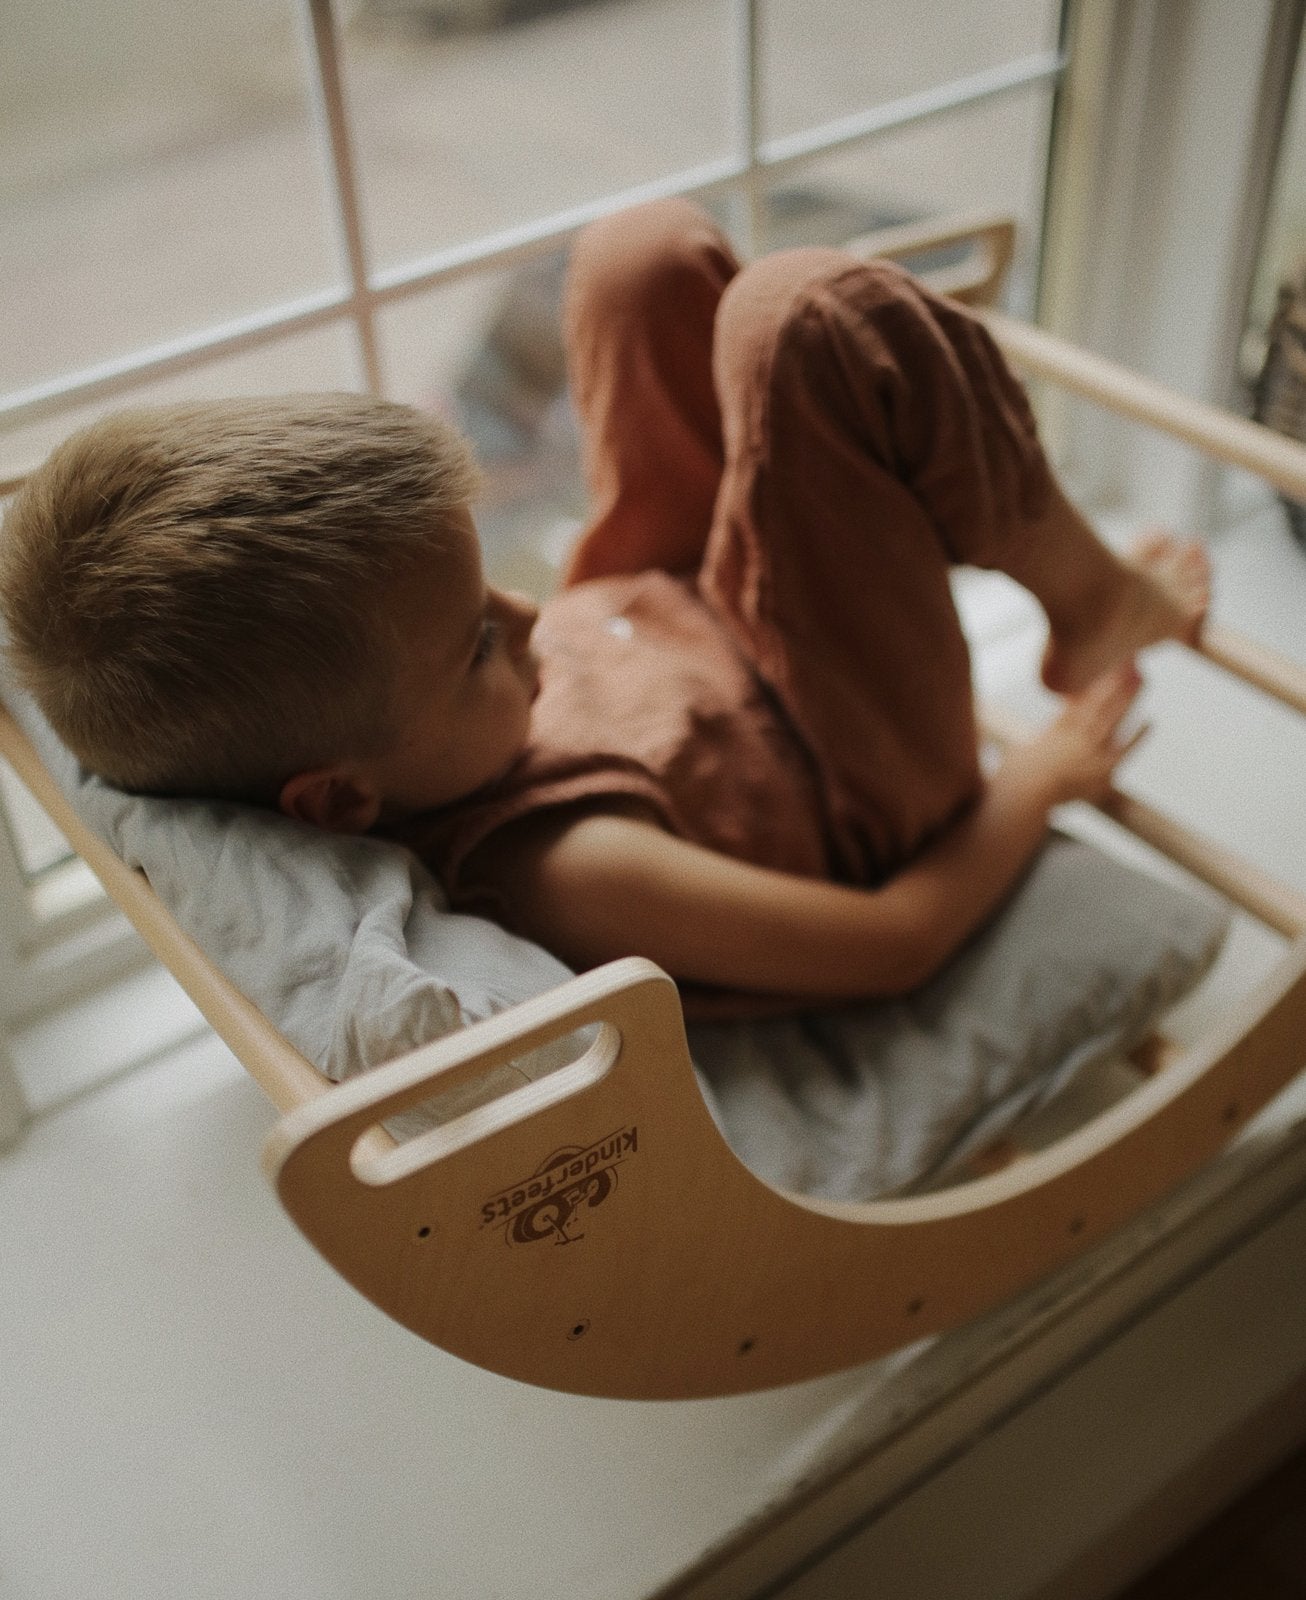 Kinderfeets Kletter- und Schaukelbogen "Pikler" - Ein Traum für abenteuerlustige Kleinkinder 💫